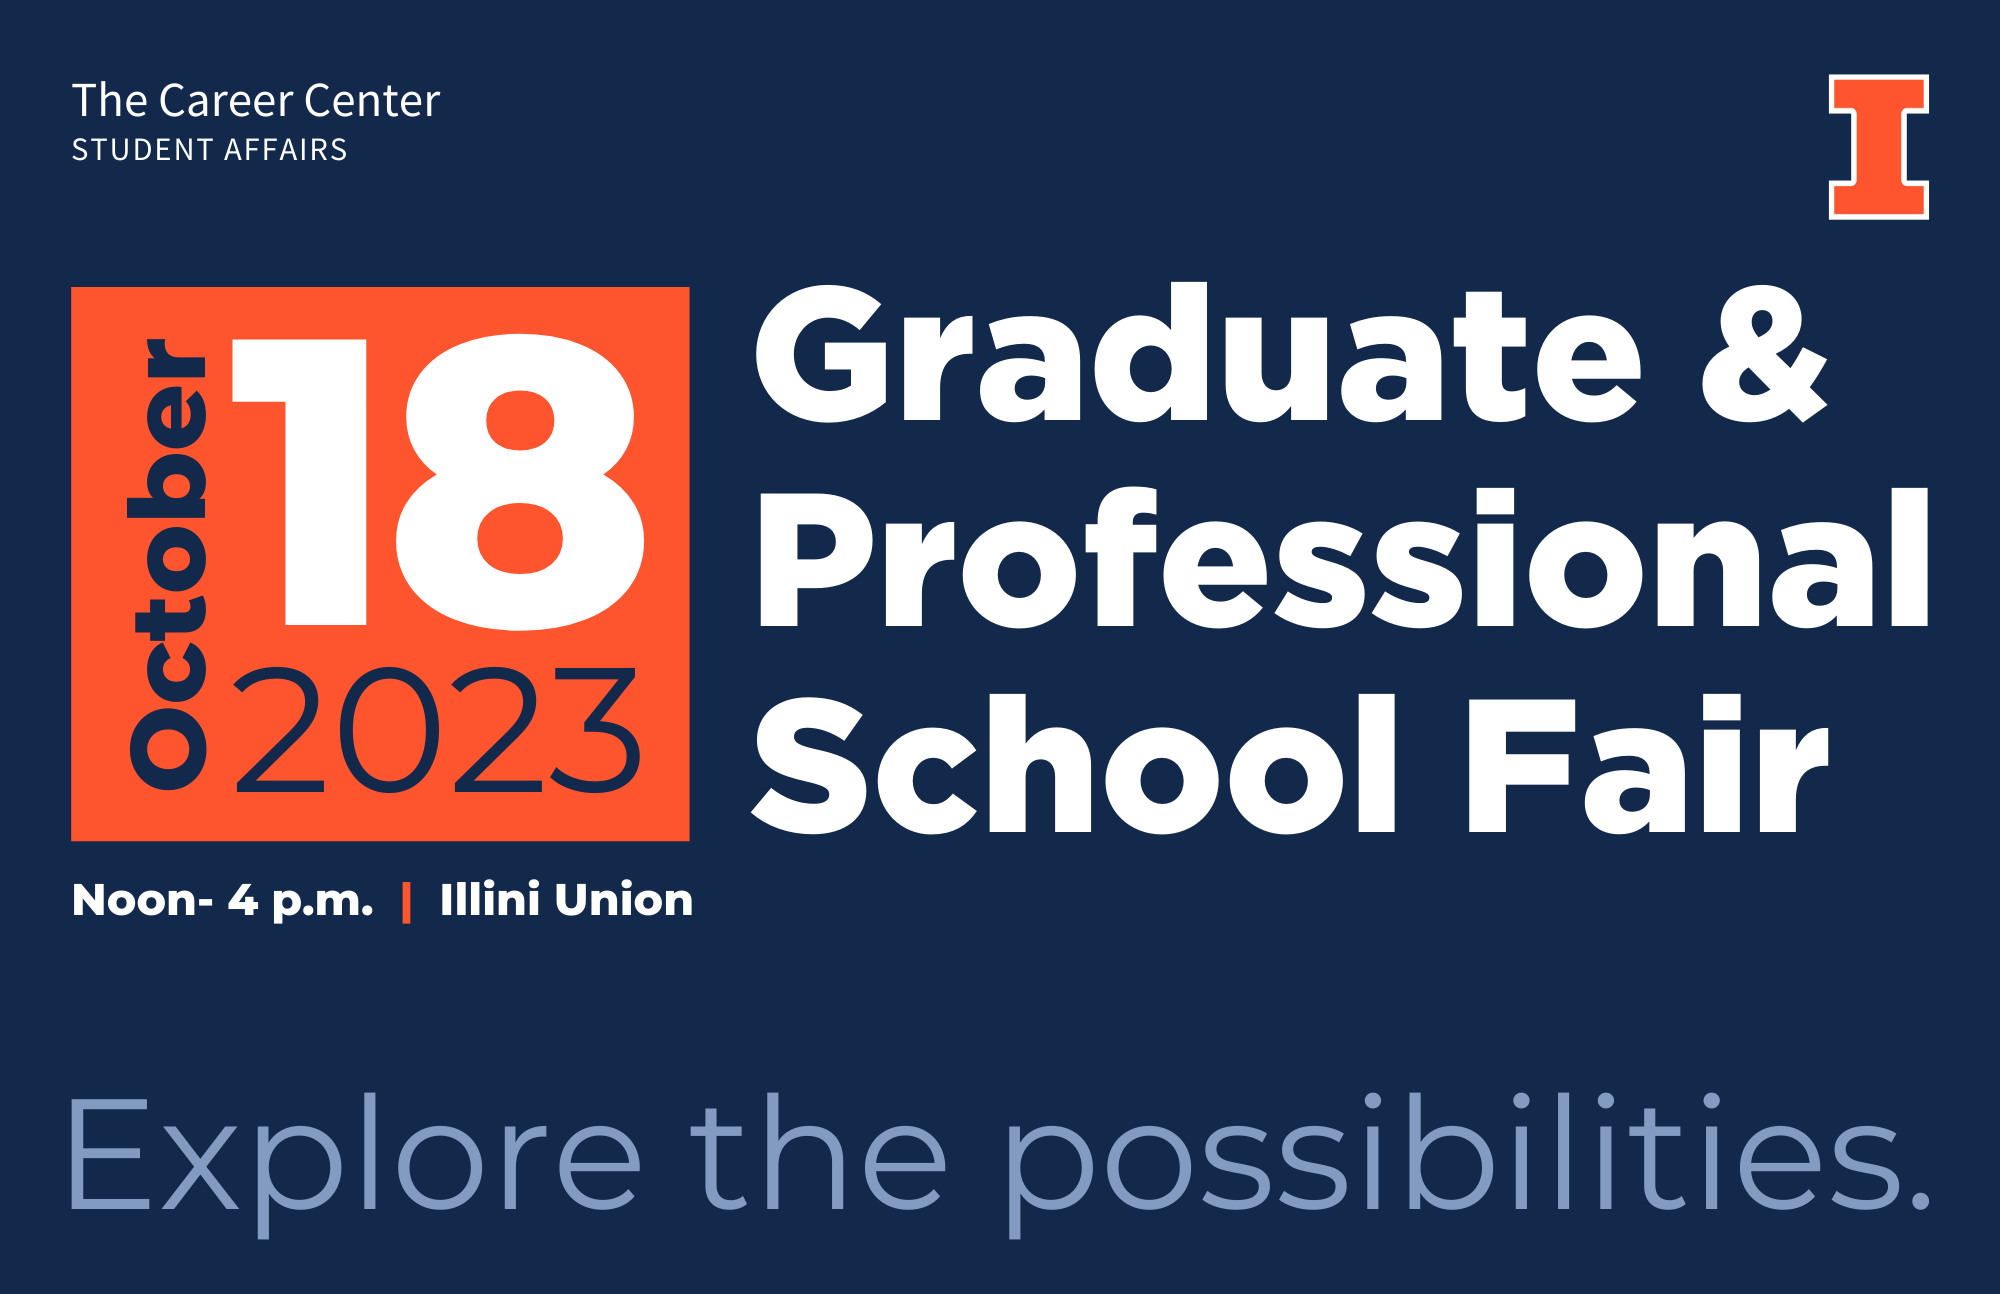 Graduate & Professional School Fair Recruiters The Career Center UIUC